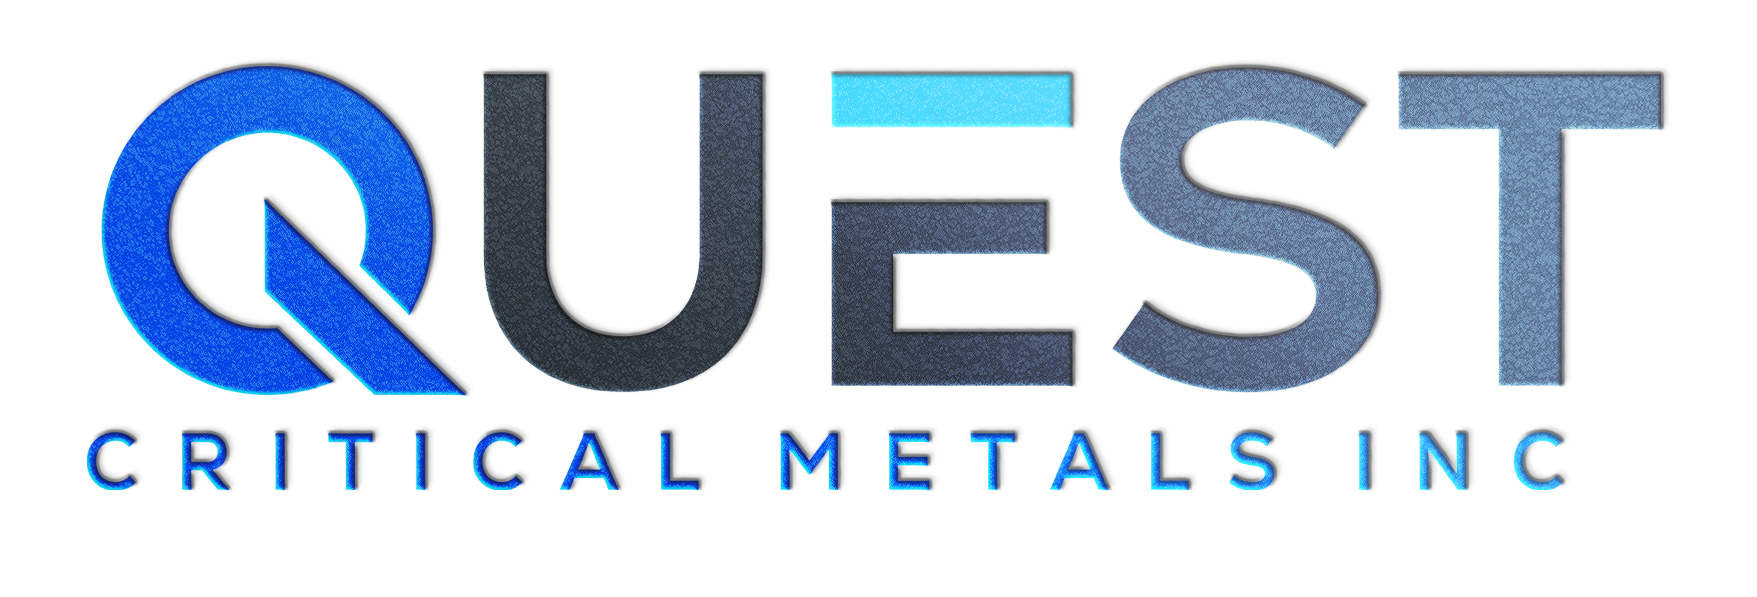 Quest Critical Metals Inc